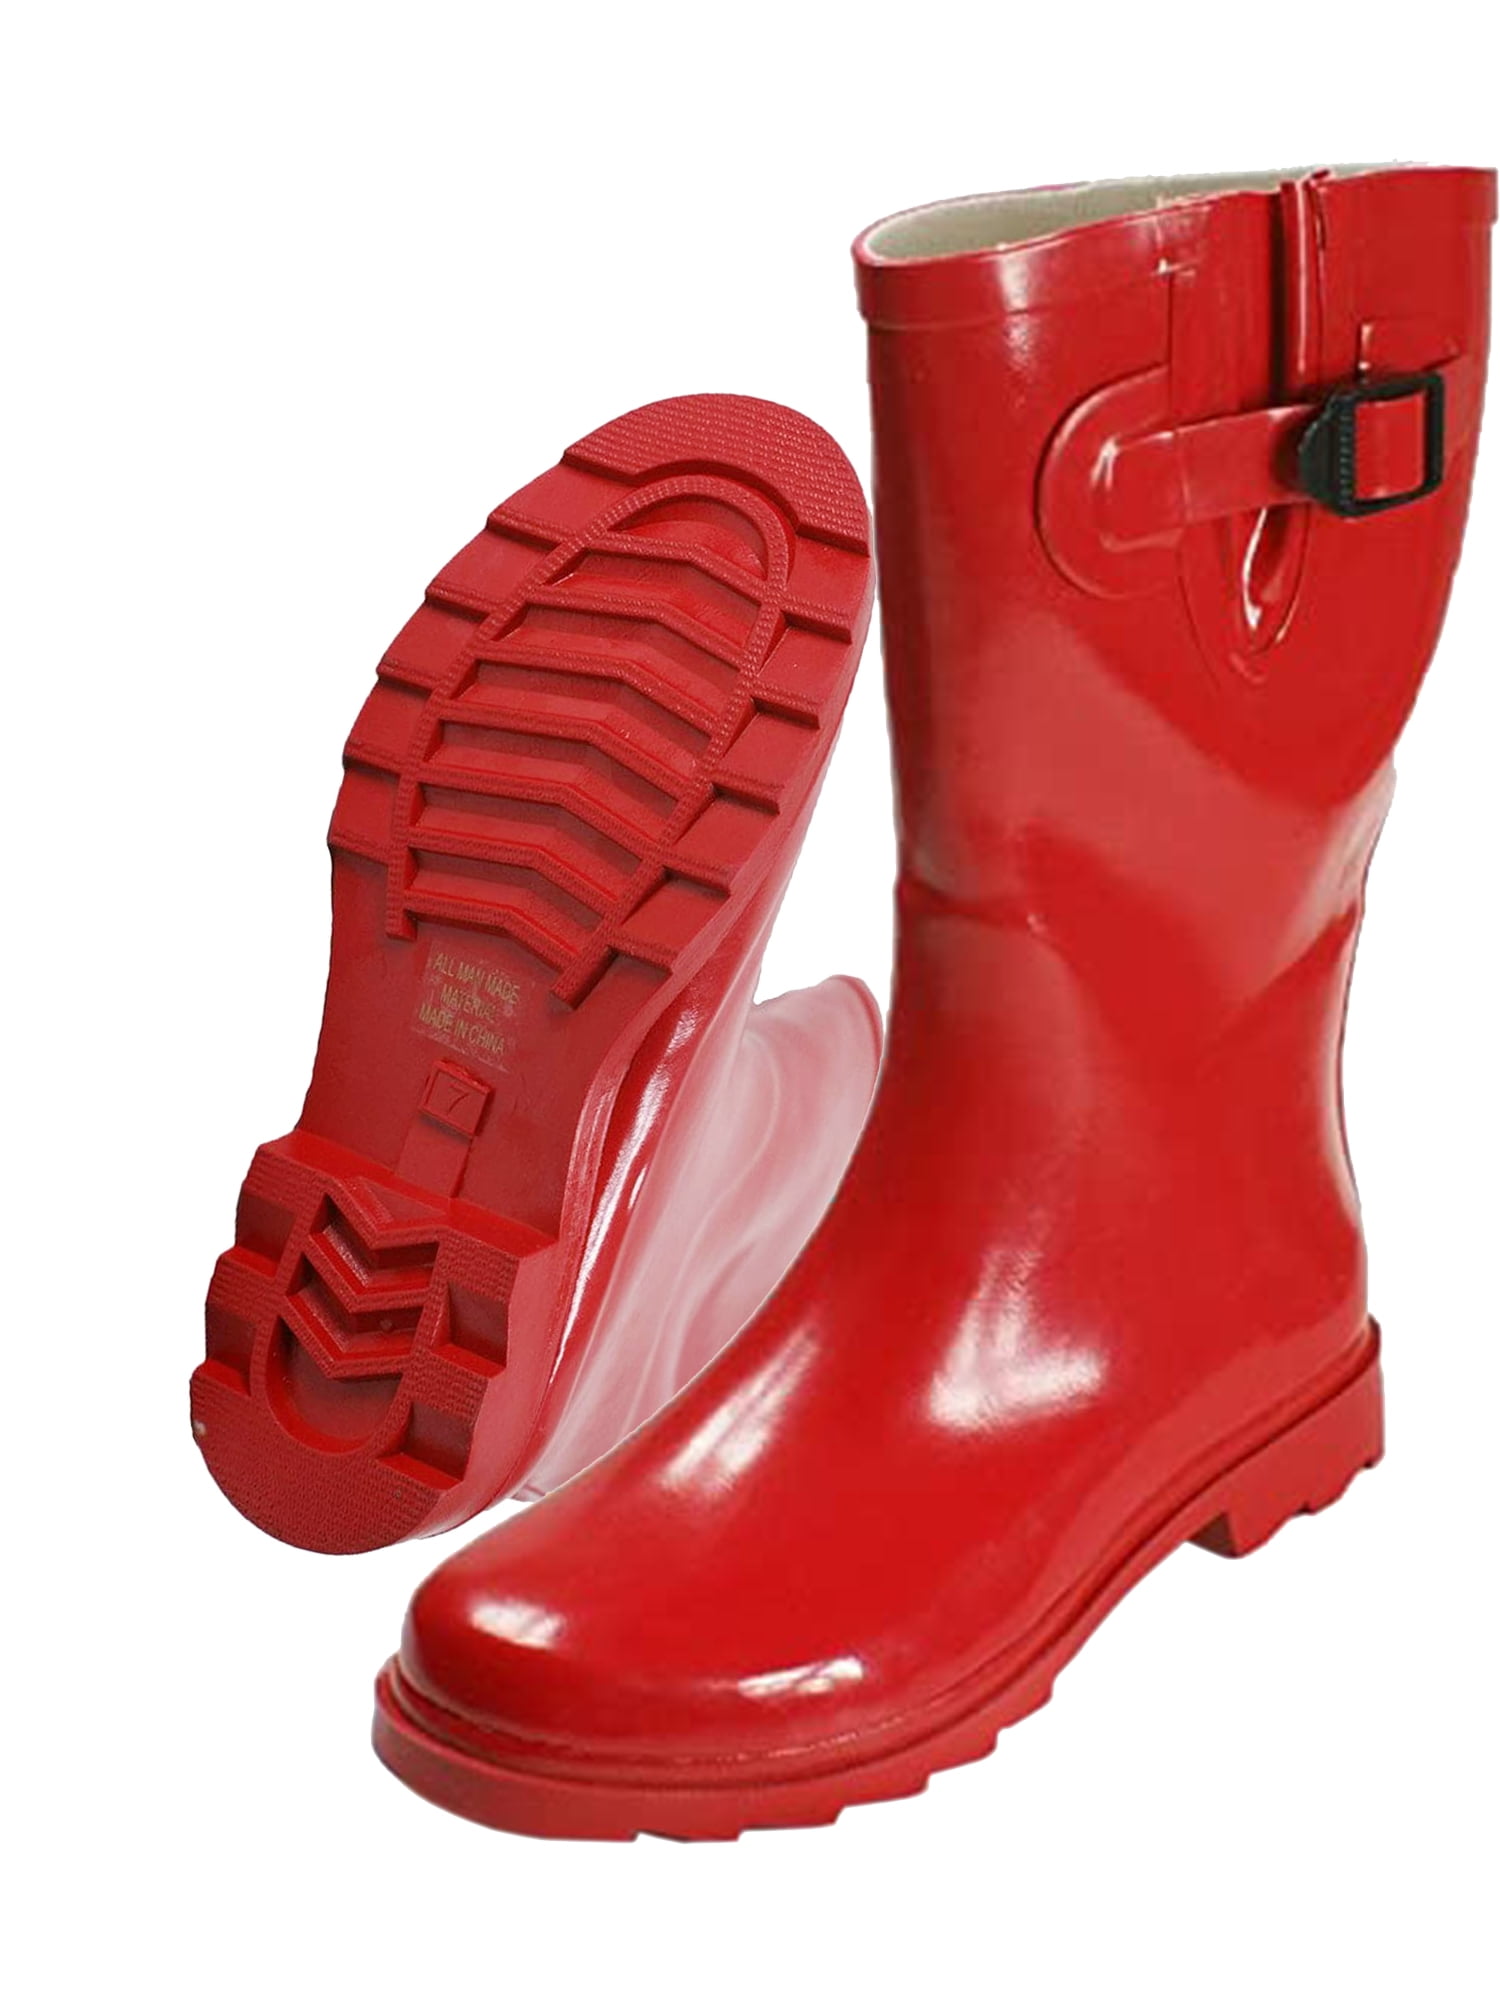 women's non slip rain boots